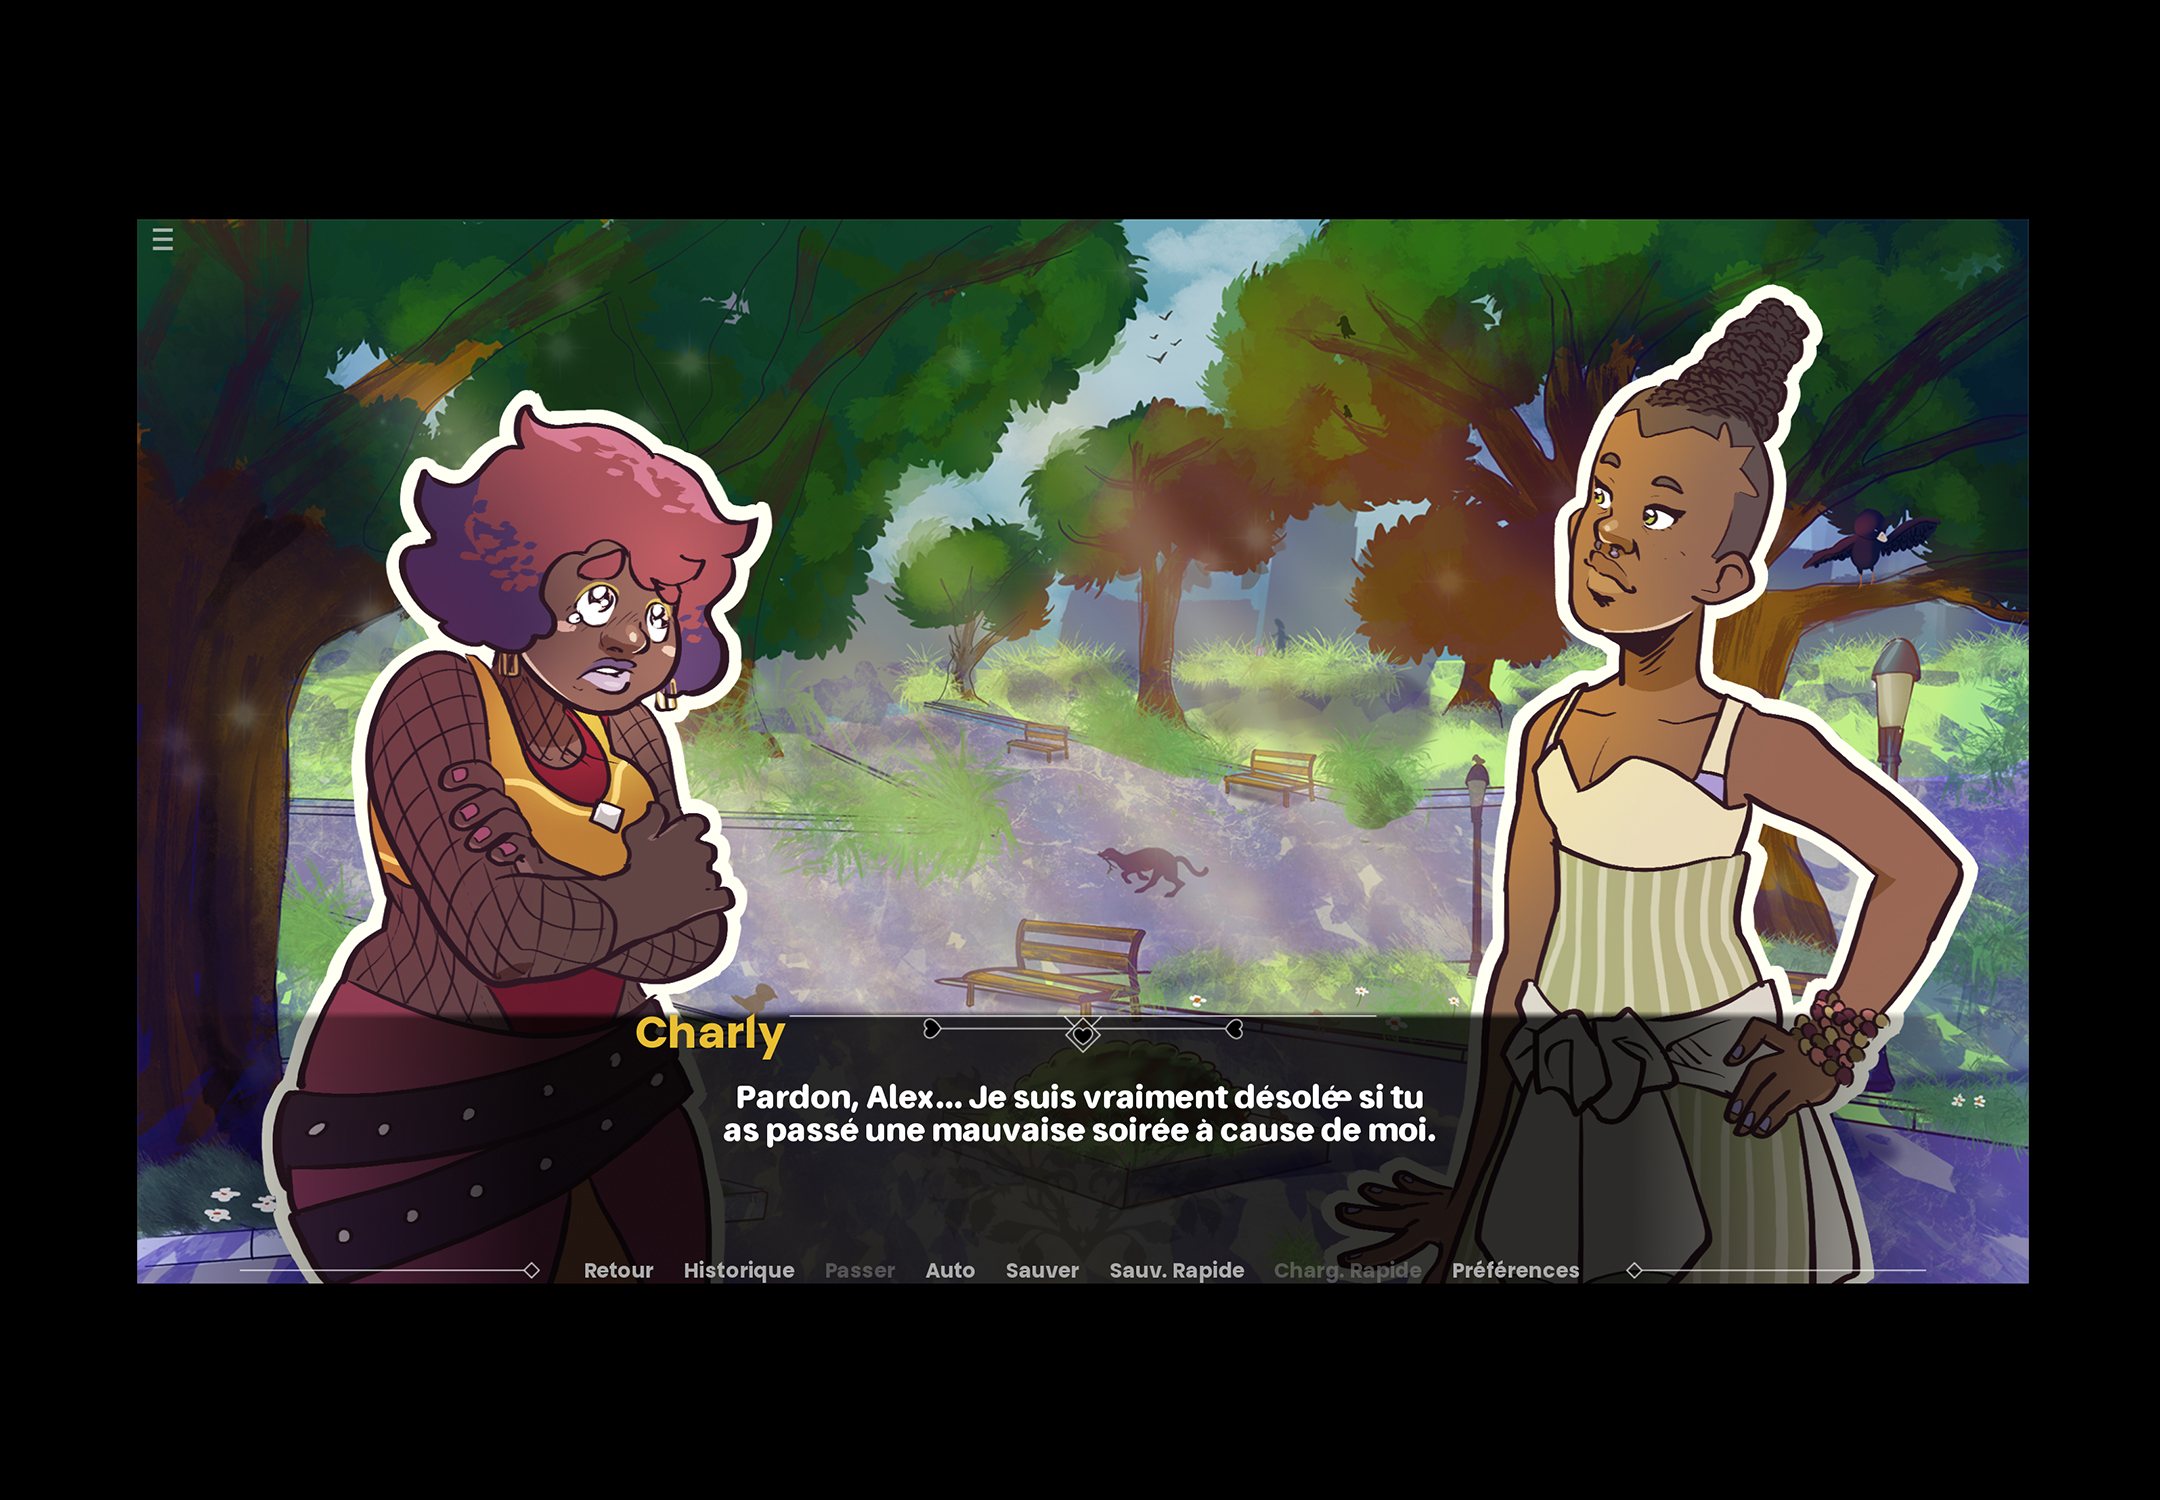 Image du jeu vidéo montrant deux personnes dans un parc, l'une d'elle a les larmes aux yeux et s'excuse que l'autre ait passé une mauvaise soirée à cause d'elle.